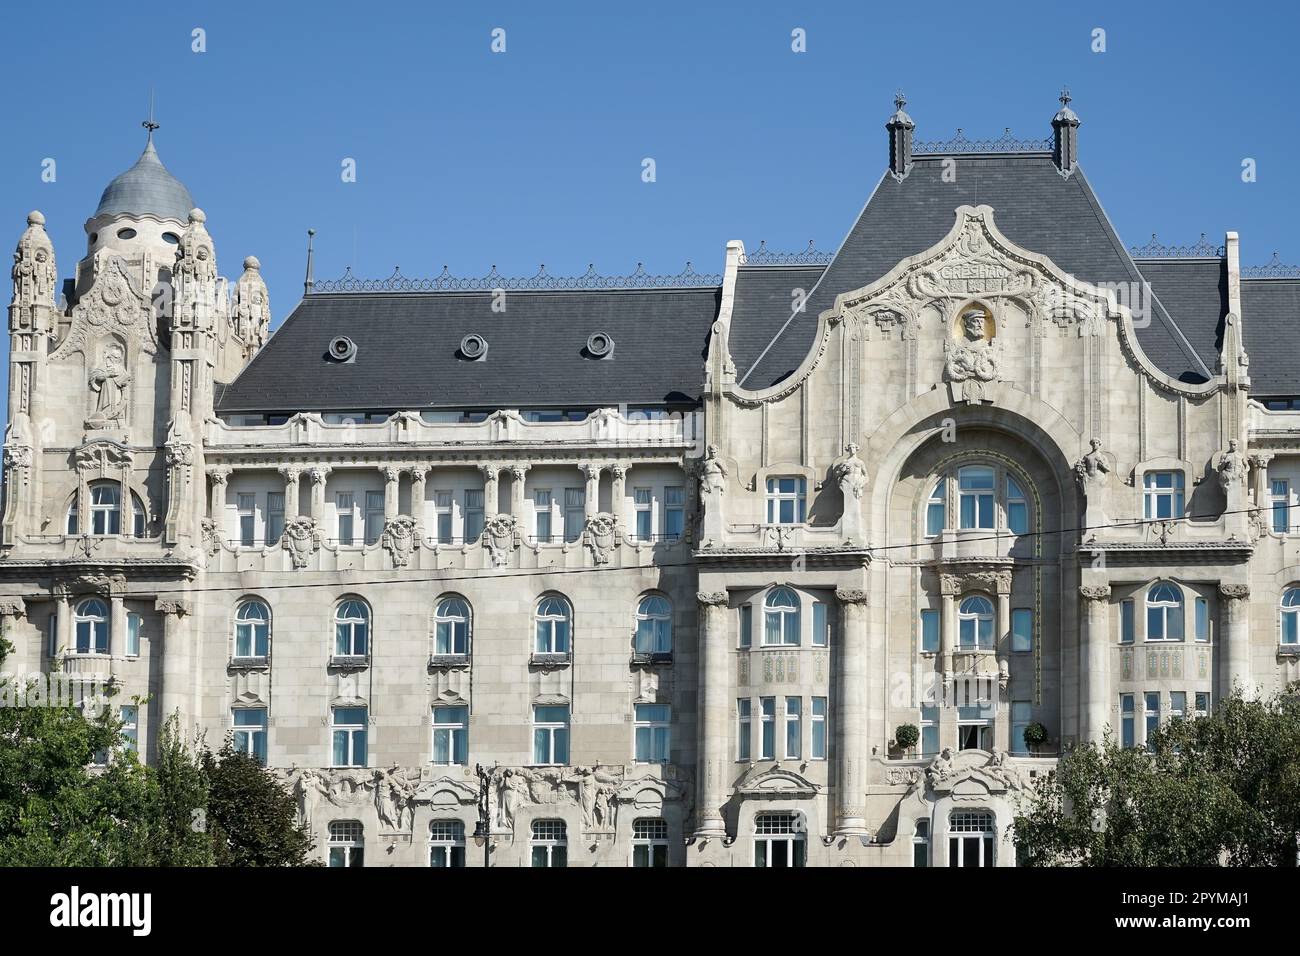 Four Seasons Hotel Gresham Palace in Budapest Stock Photo